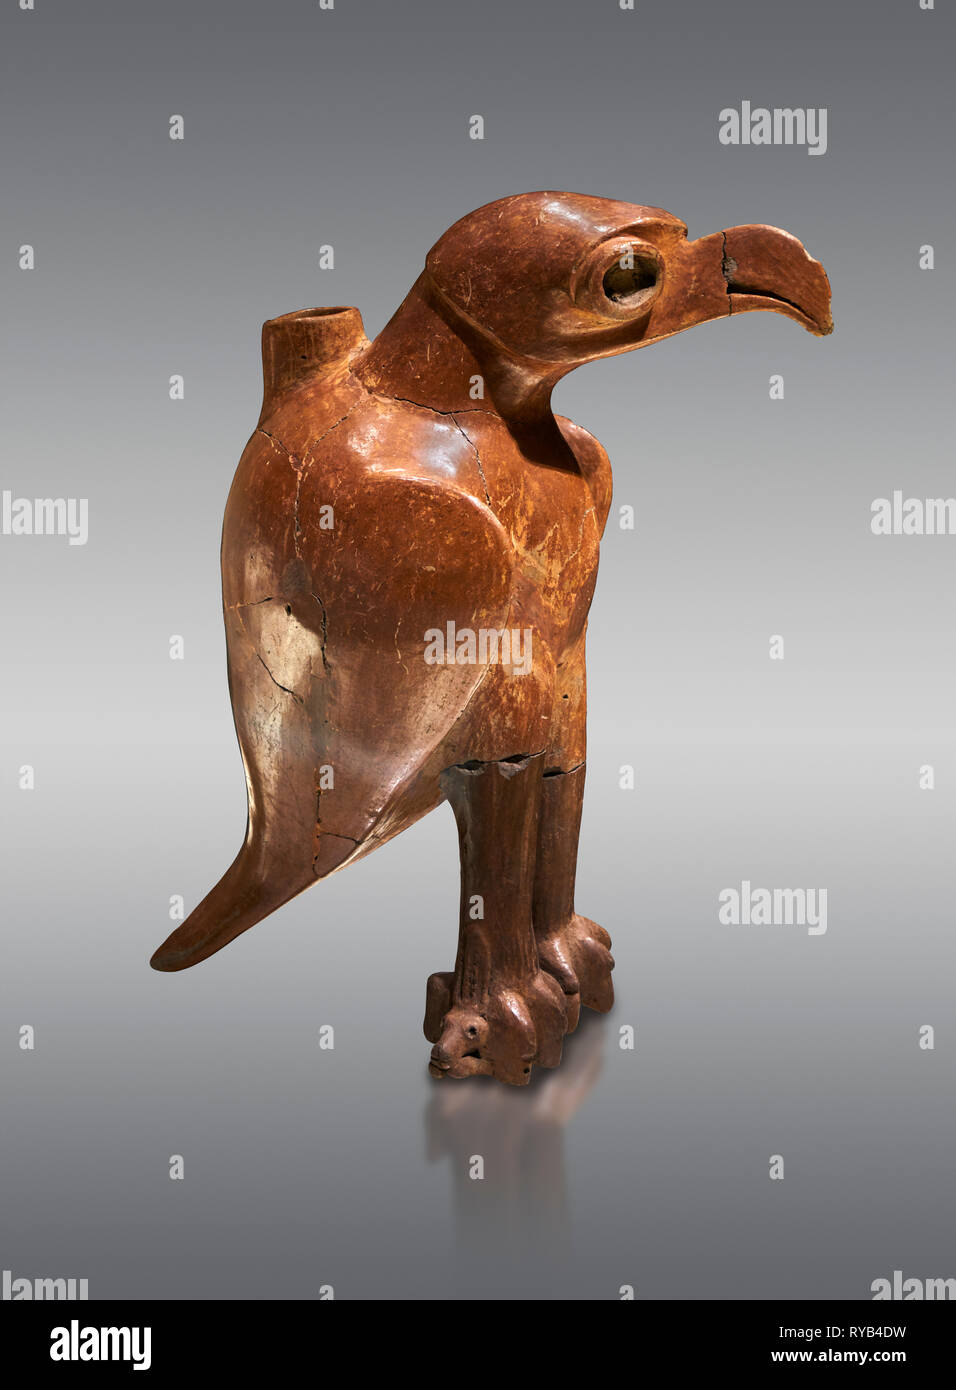 L'âge de bronze en forme de navire Anatolian eagle rituel - 19e au 17e siècle avant J.-C. - Kültepe Kanesh - Musée des civilisations anatoliennes, Ankara, Turquie. Contre Banque D'Images